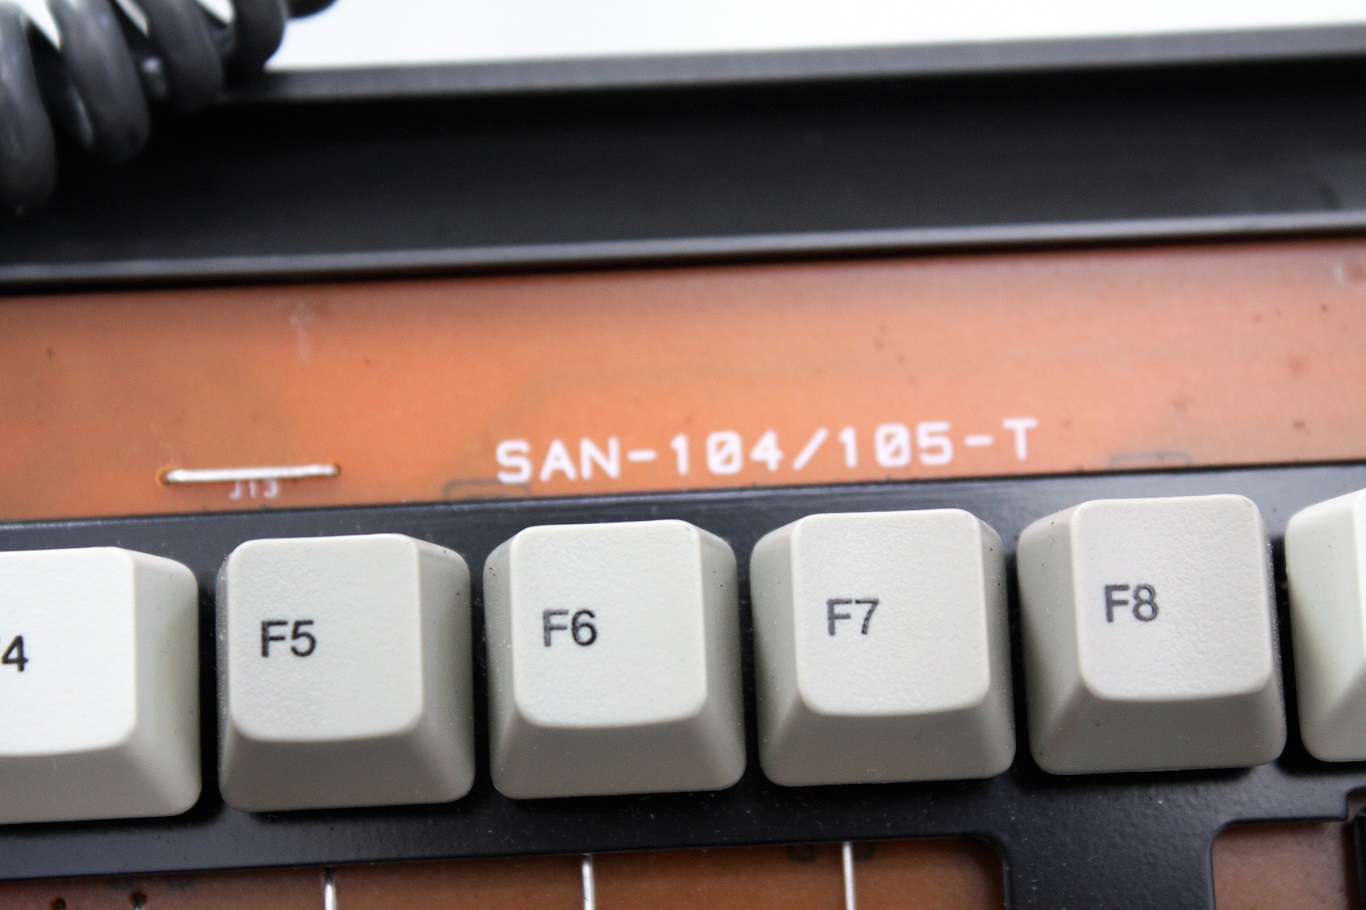 Prism N7 - keyboard markings